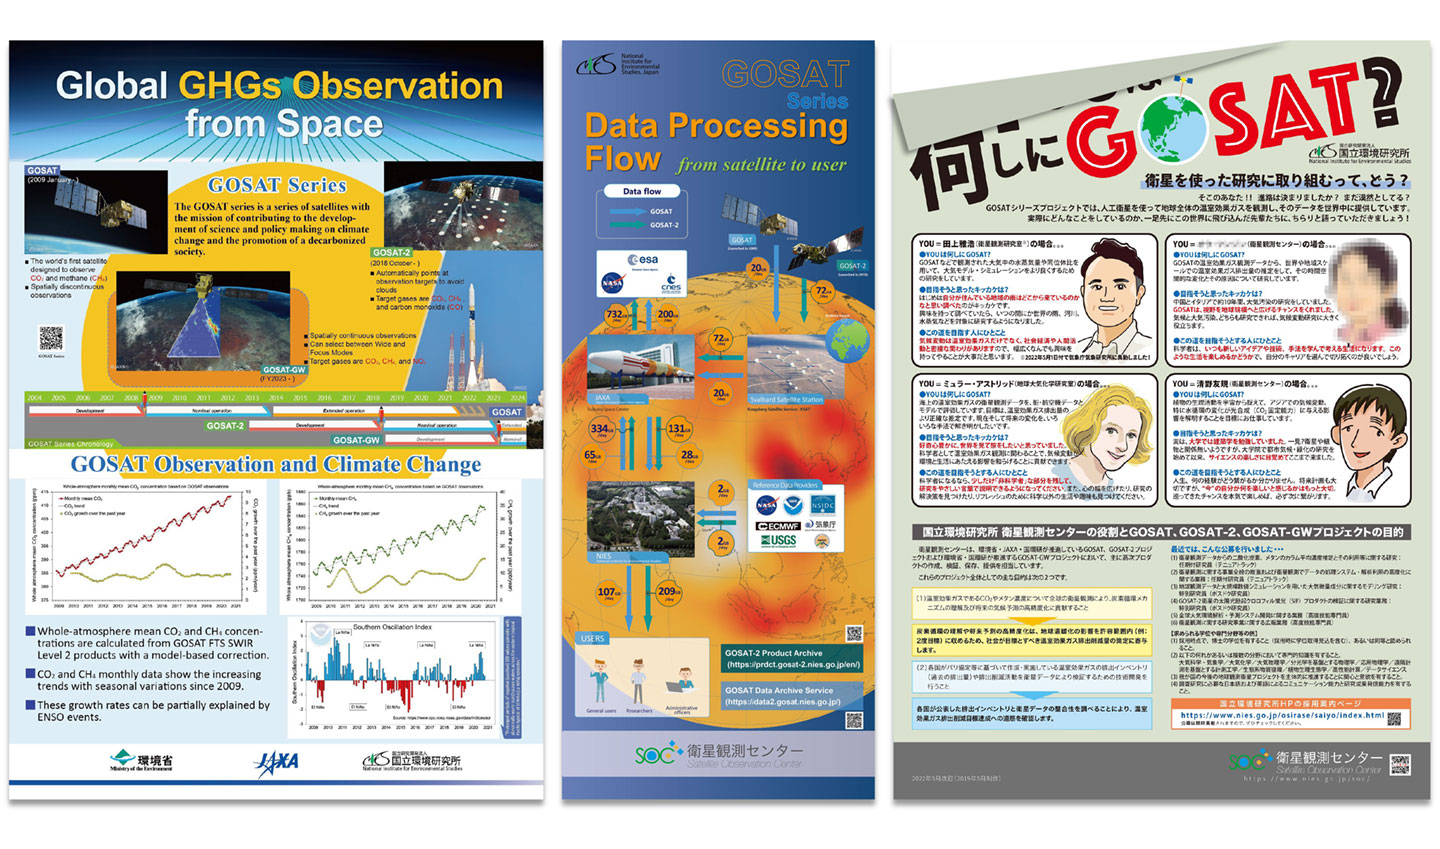 図2　衛星観測センターのオンライン展示用ポスターの一部。（左）GOSATシリーズの衛星紹介とGOSAT観測データを処理して得られたCO2とメタン濃度の経年変化。（中）GOSAT、GOSAT-2からユーザへプロダクトが配布されるまでの流れ。（右）GOSATシリーズプロジェクトの若手研究者へのインタビューとリクルート情報（ウェブ掲載にあたり一部加工をしています）。